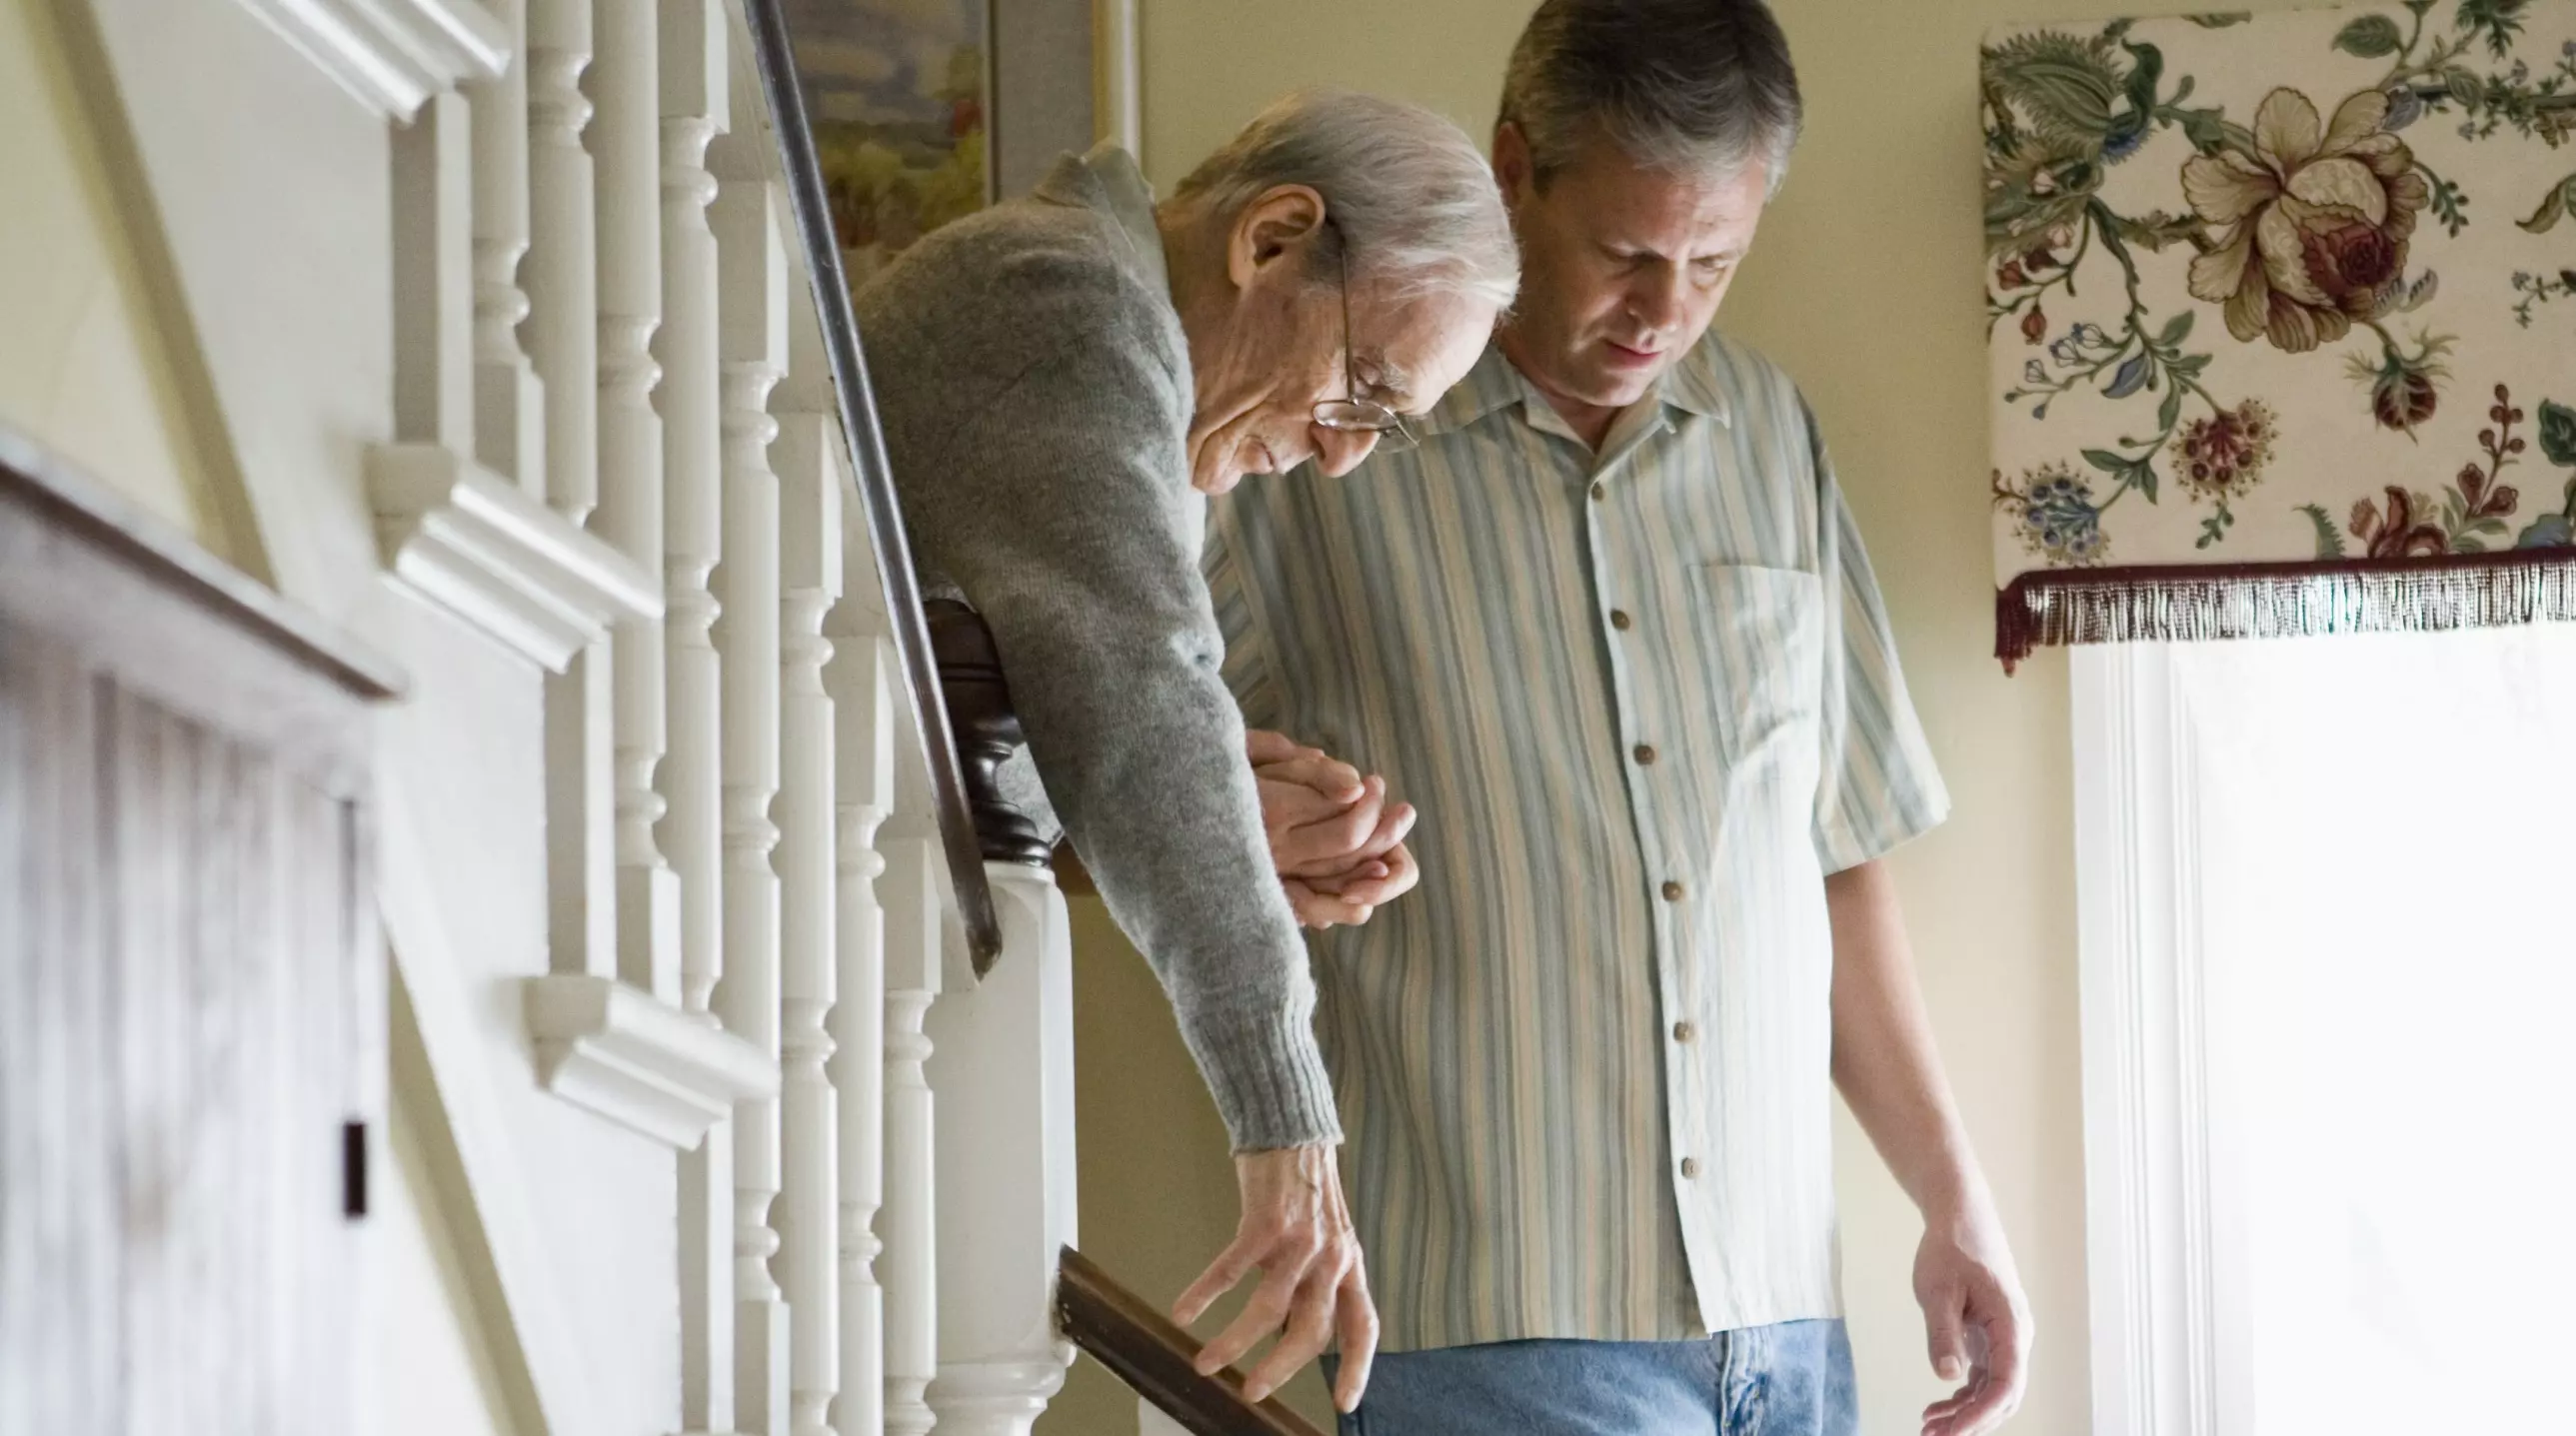 Mann hilft einem alten Mann die Treppe hinunter in einem Wohnhaus.